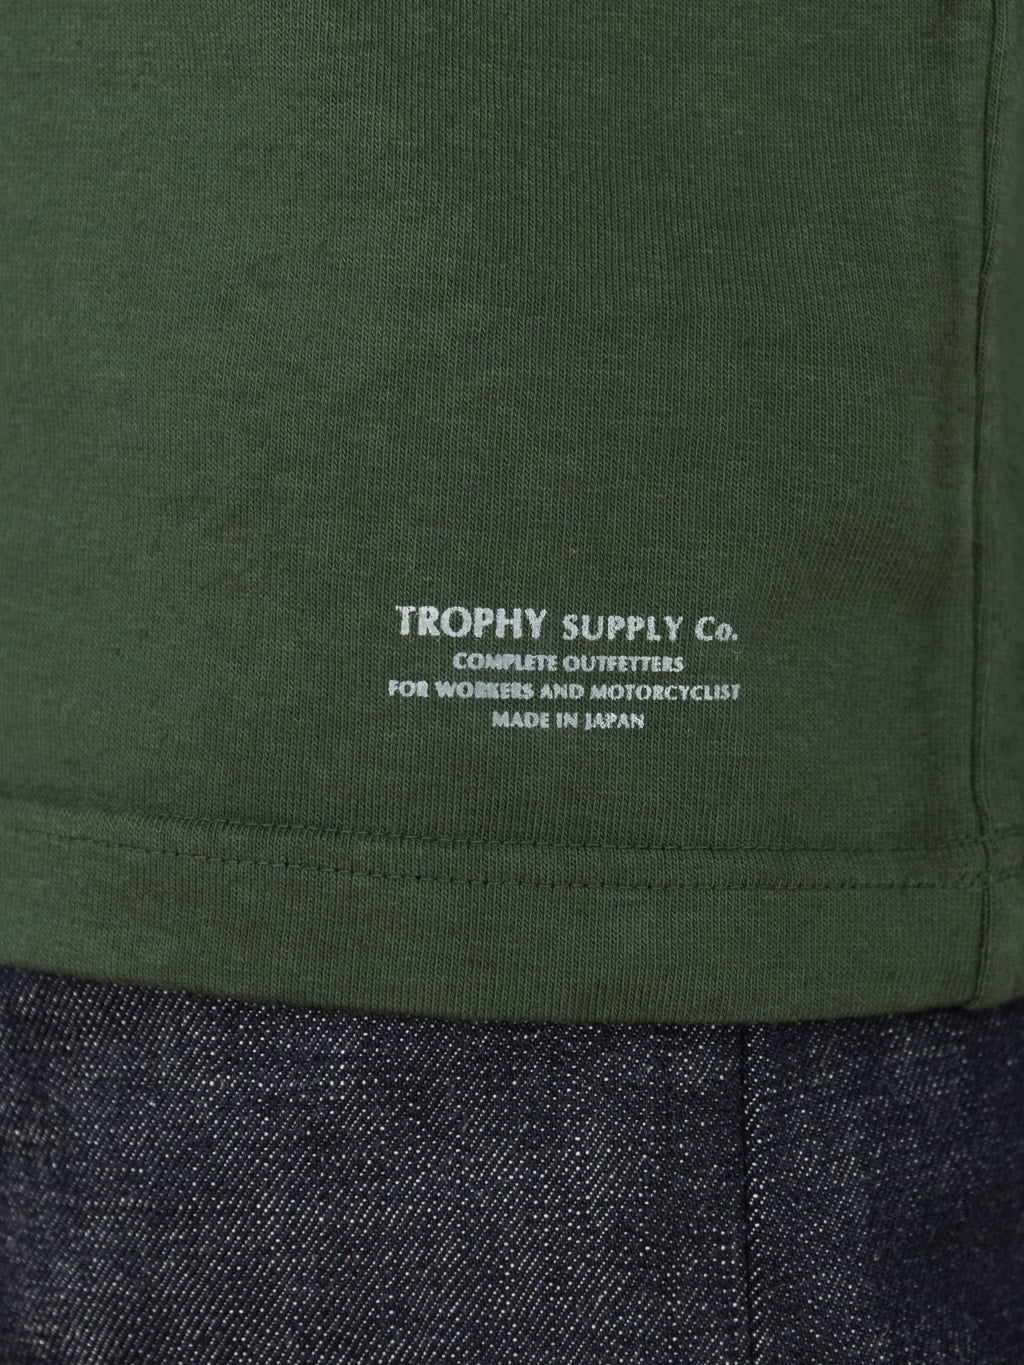 trophy clothing od pocket tee olive printed branding hem